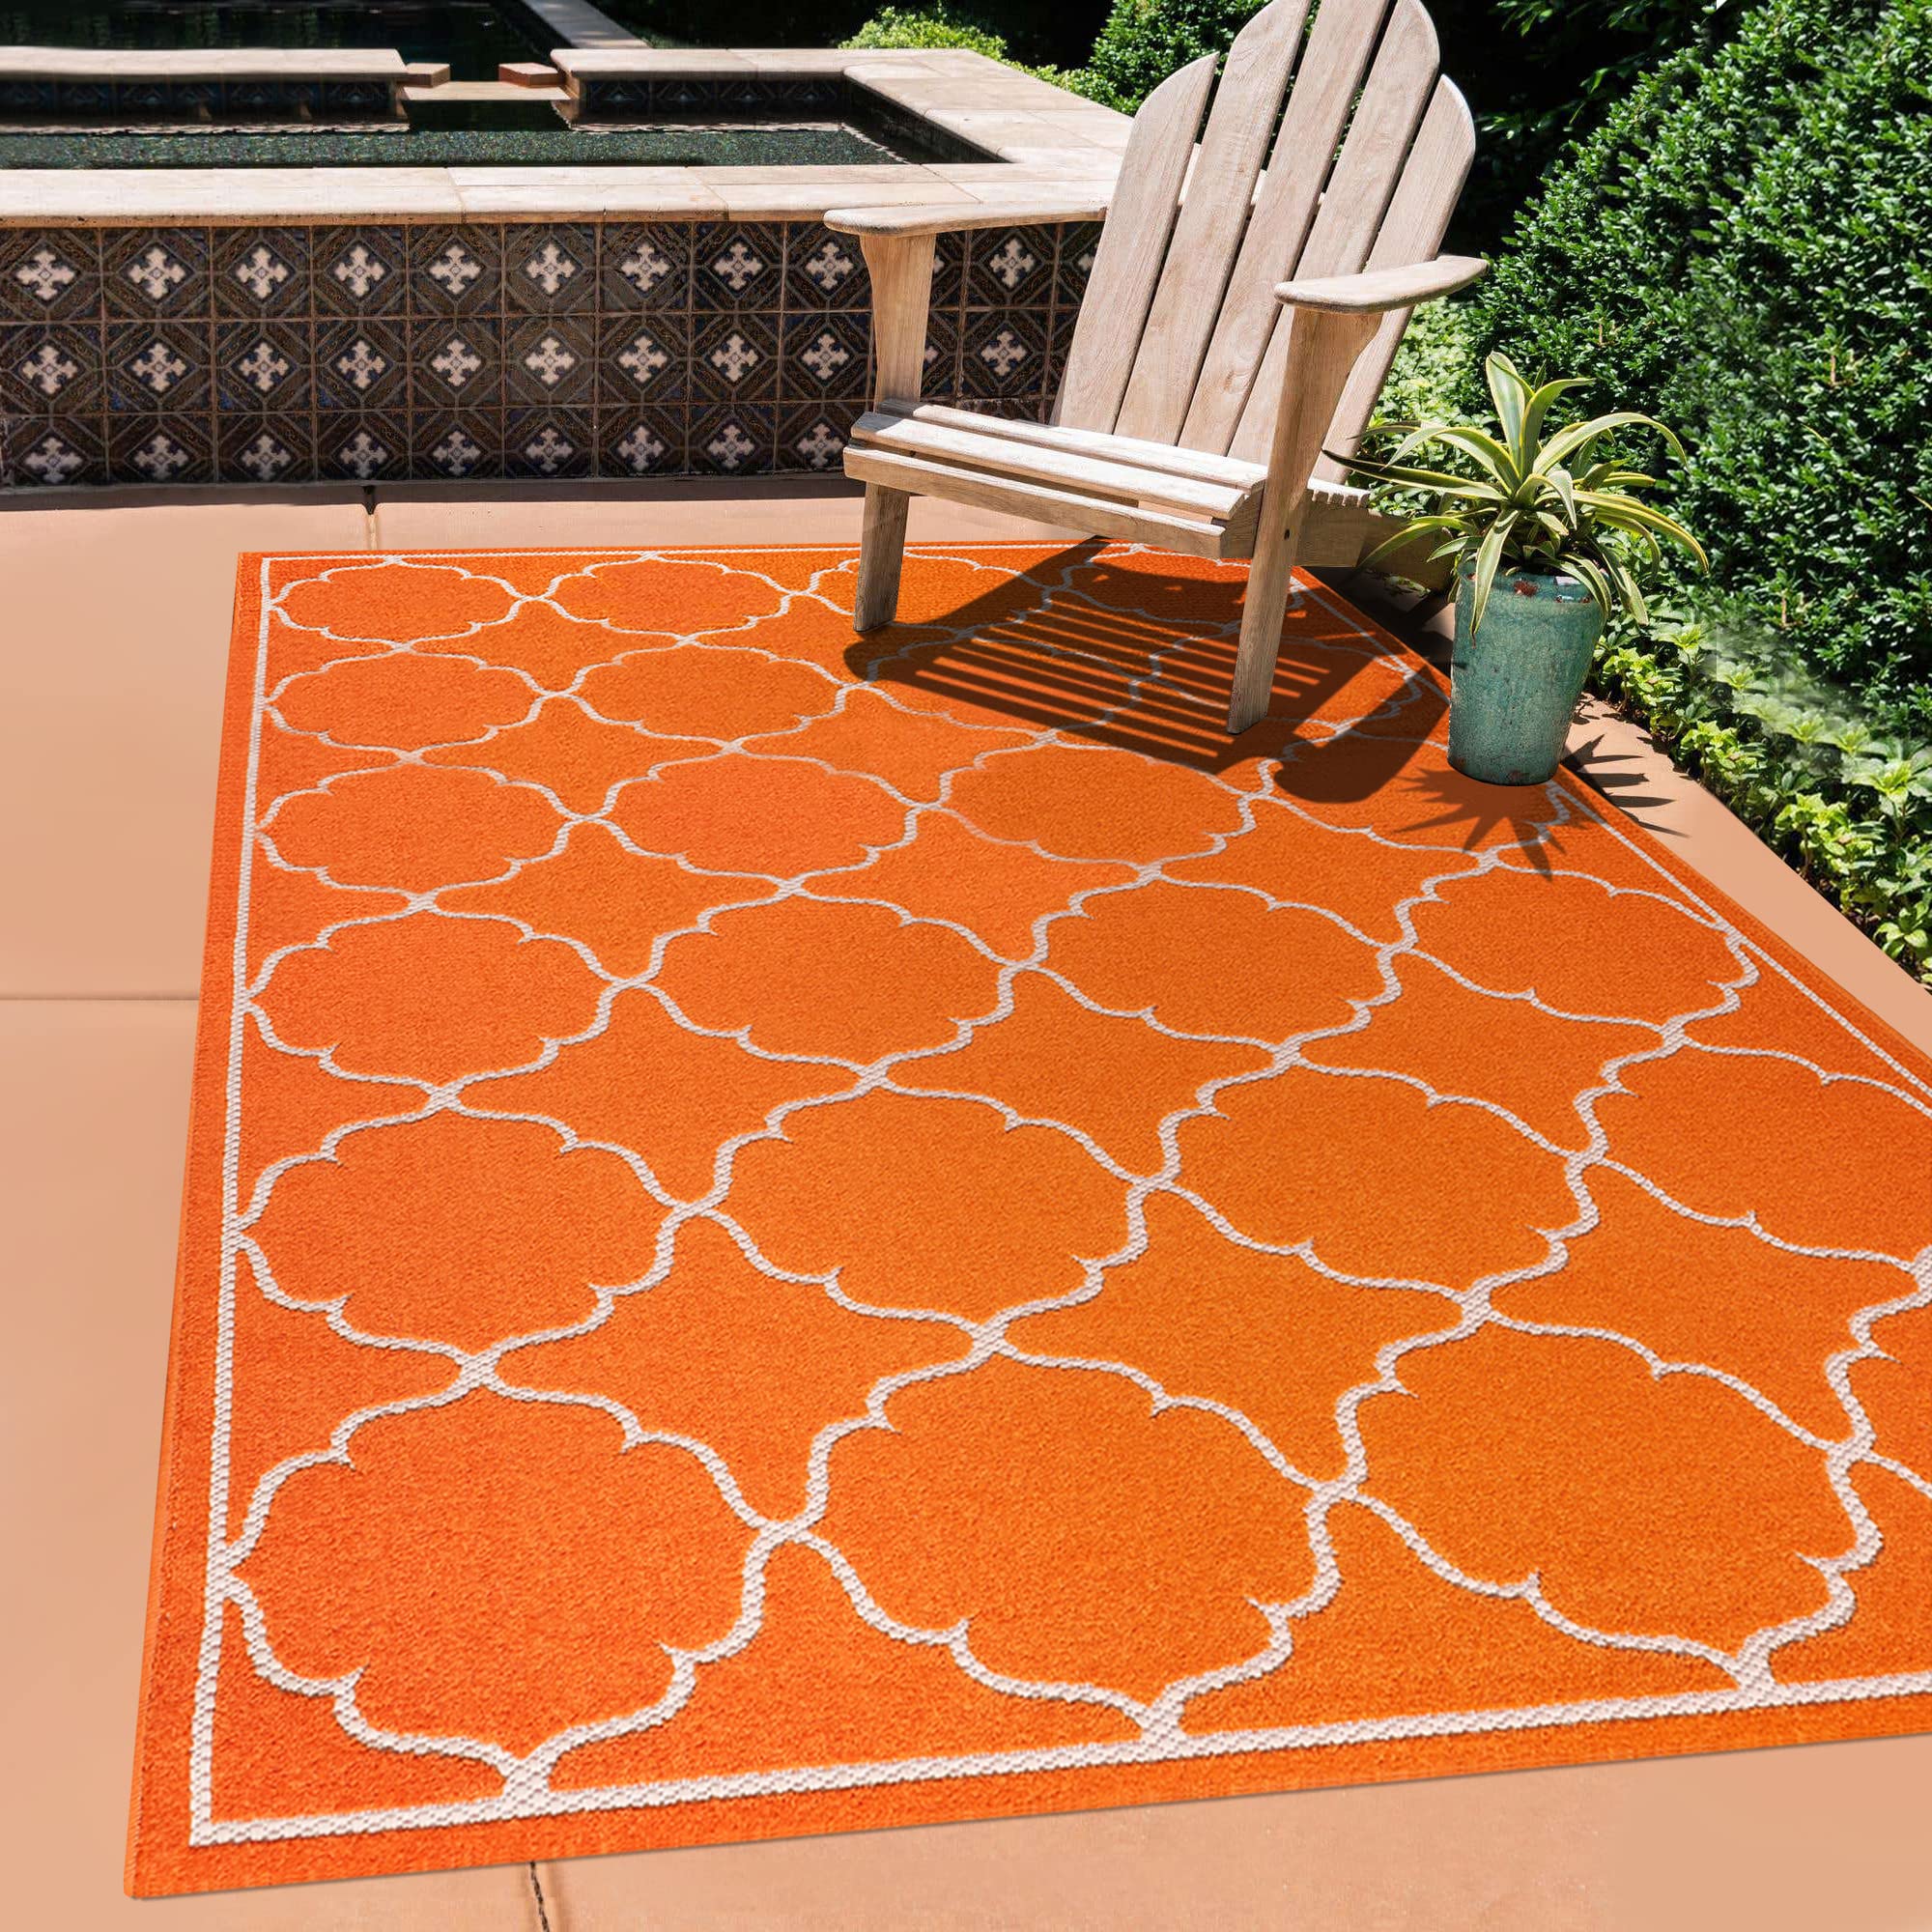 SANAT Outdoor Teppich Wetterfest - Teppich für den Innen- und Außenbereich - Balkon Teppich Wasserabweisend - Teppiche für Terrasse, Garten, Küche, Bad oder Wohnzimmer - Orange, 120 x 170 cm